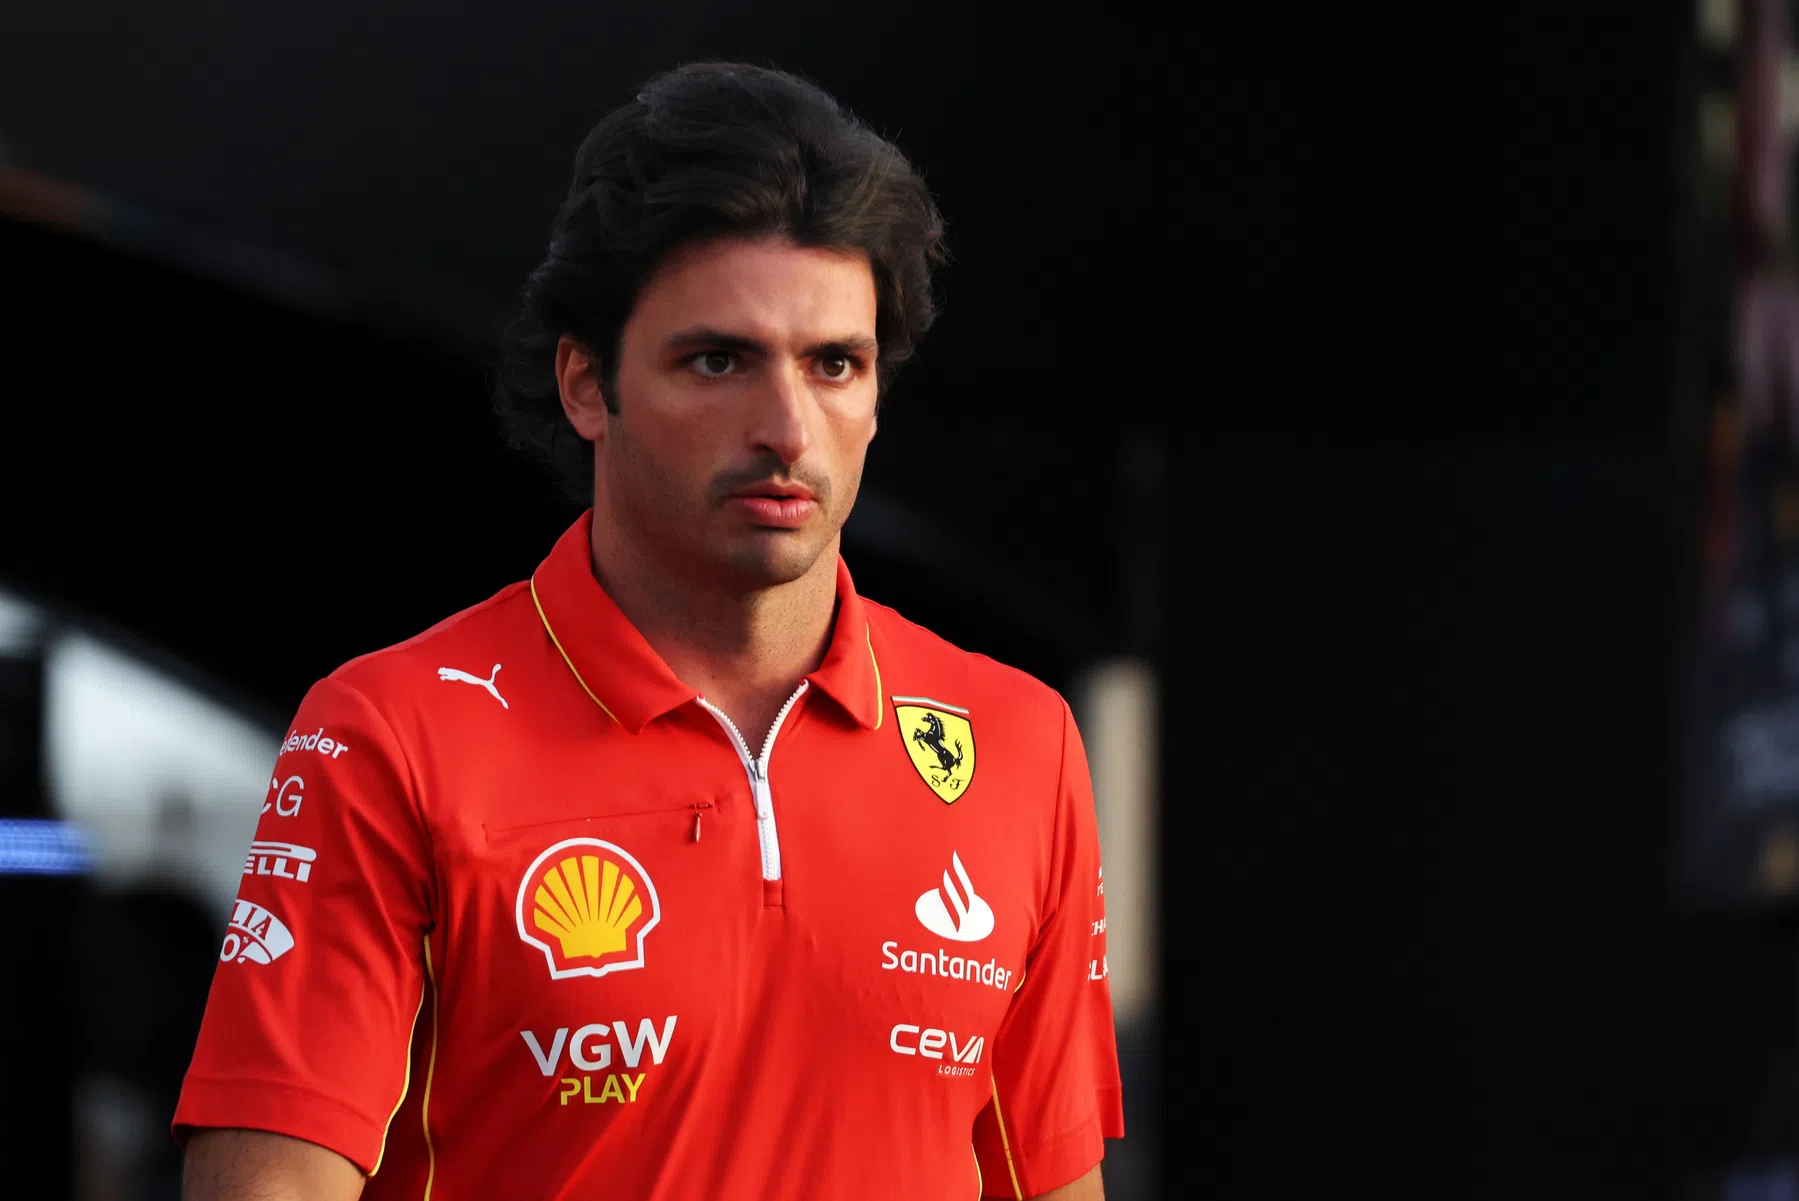 Secondo la Ferrari, Sainz tornerà al volante a Melbourne